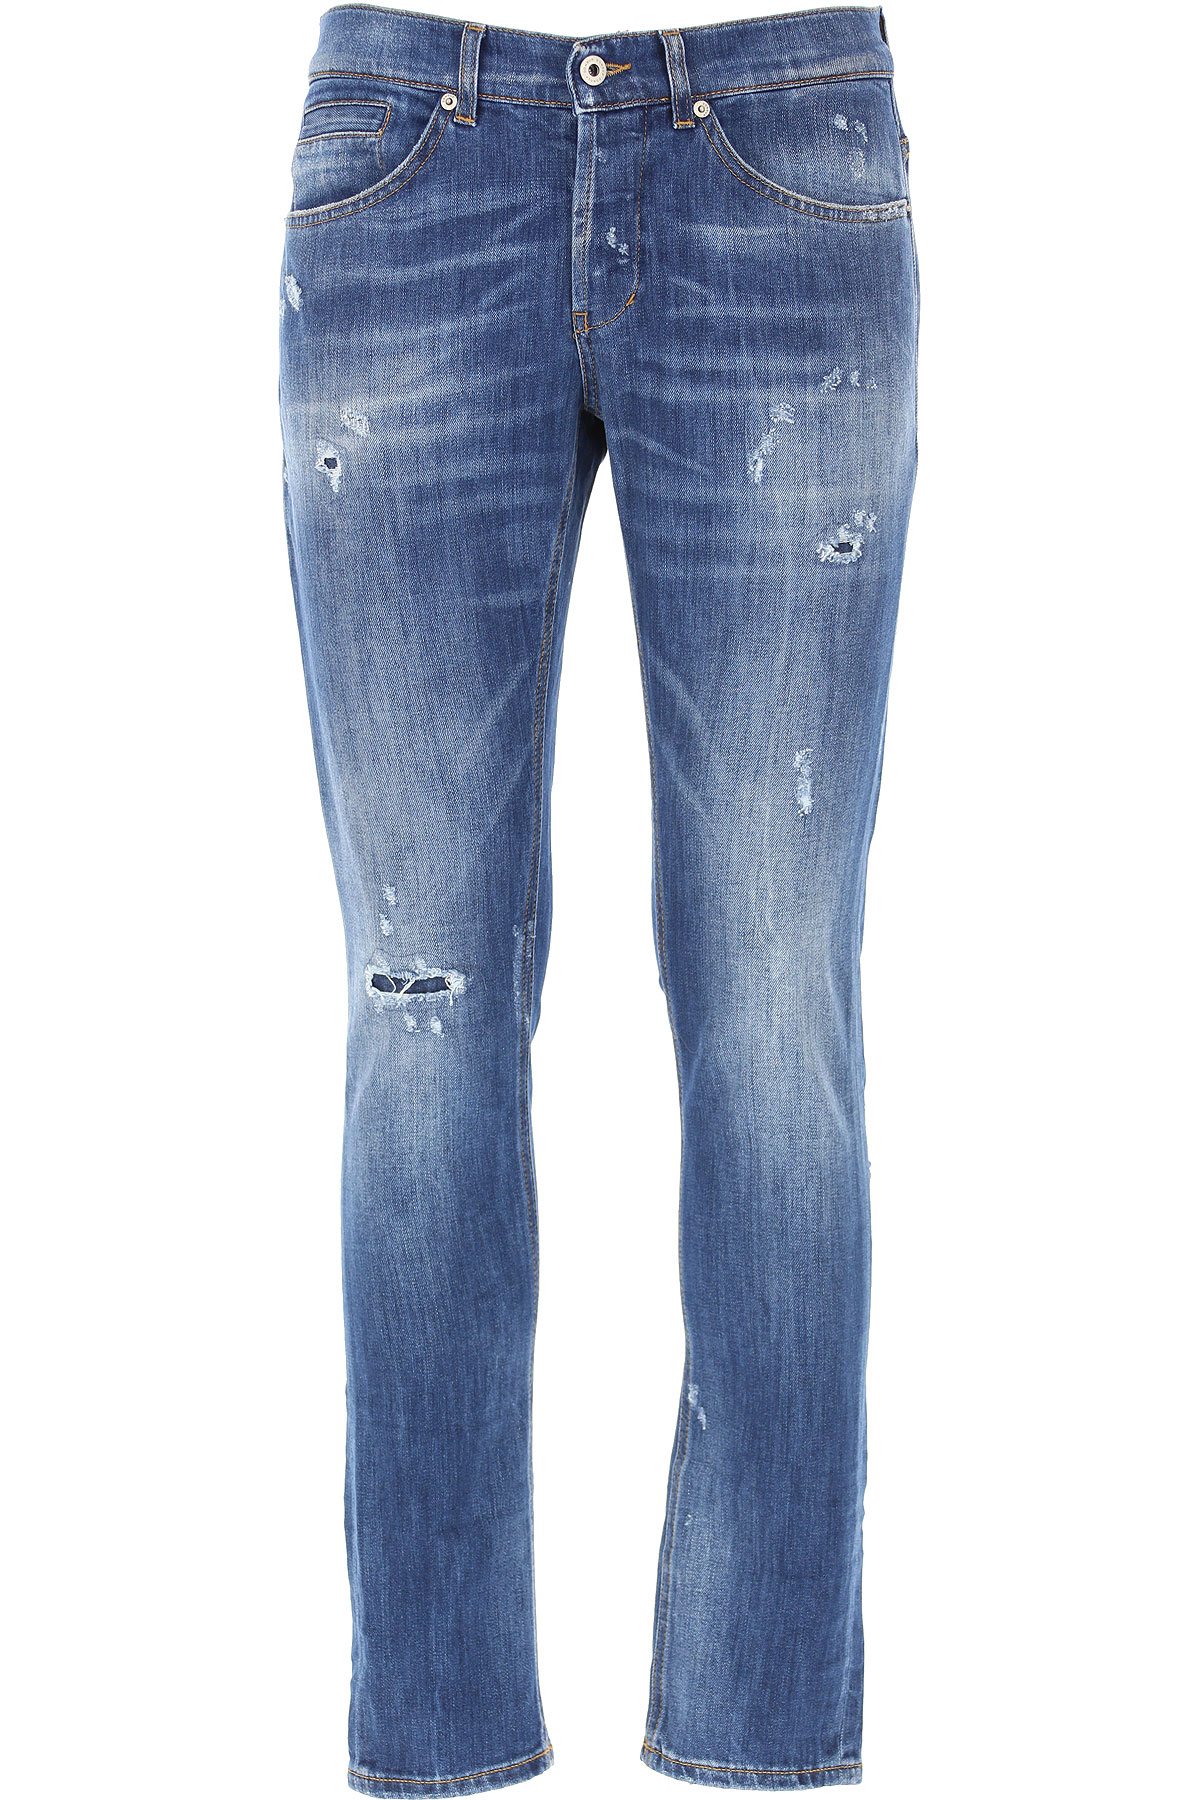 Dondup Jeans, Bluejeans, Denim Jeans für Herren Günstig im Sale, Denim- Blau, Baumwolle, 2017, 44 45 47 48 49 50 51 52 54